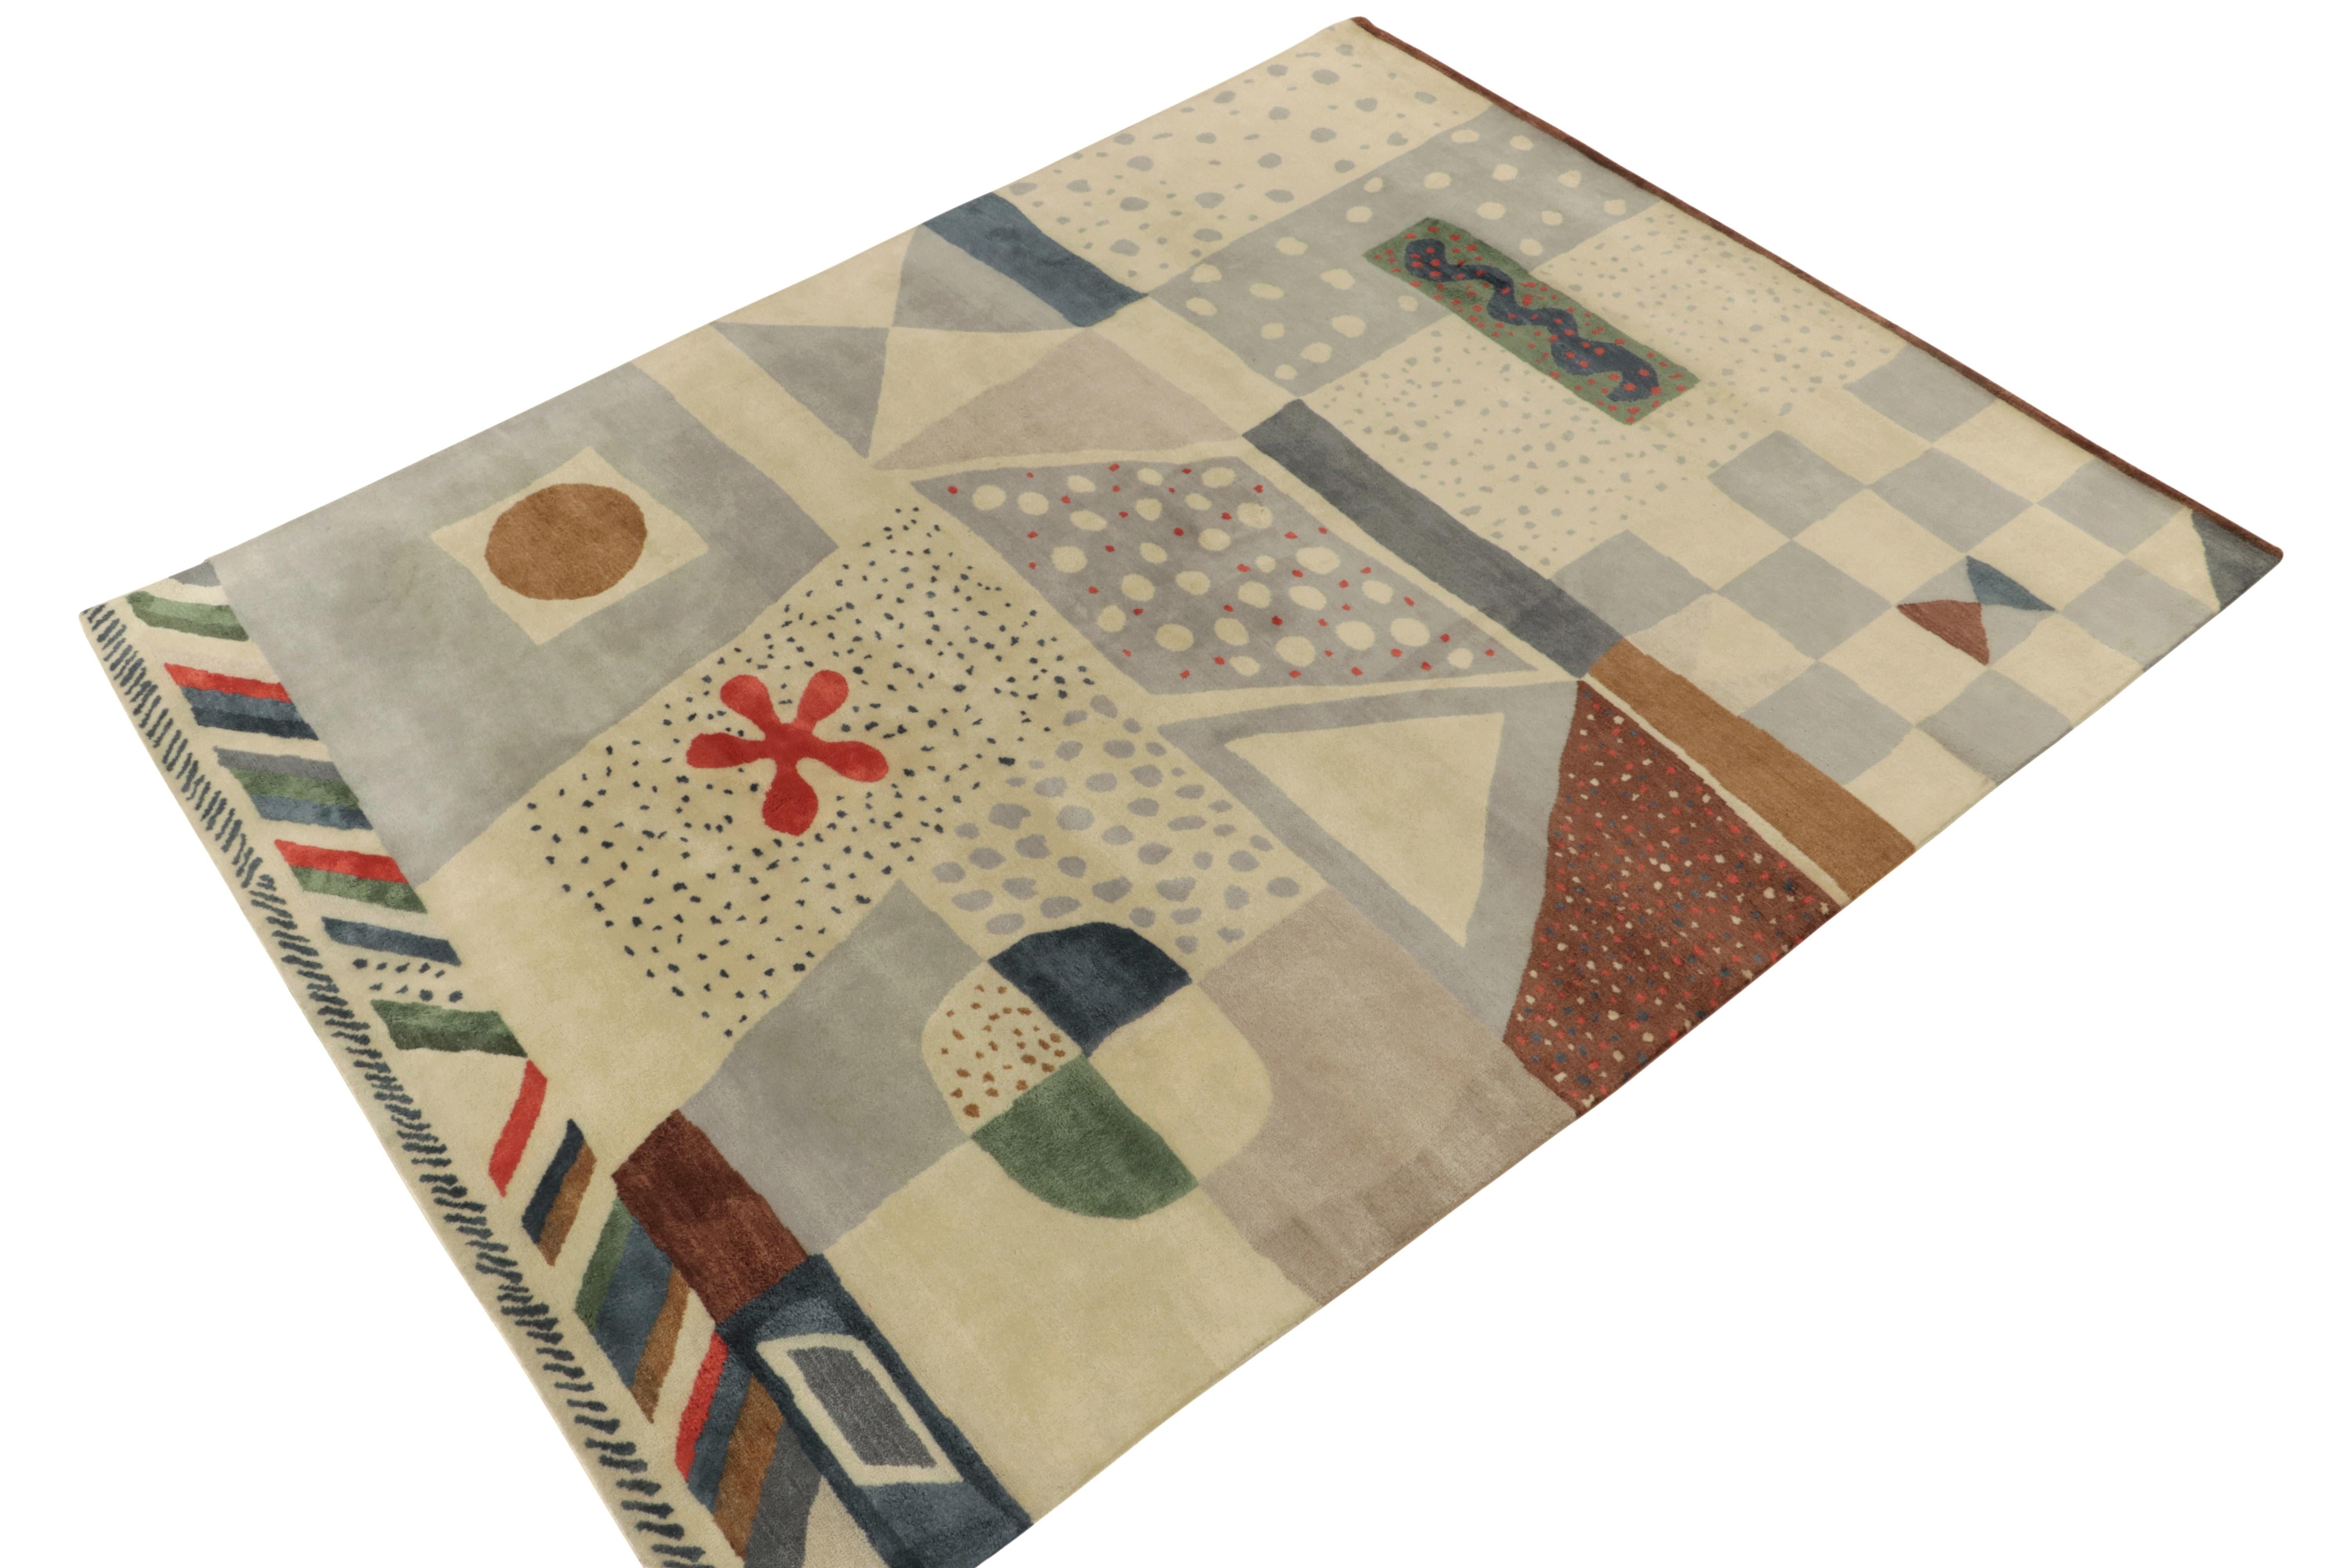 Ein 8x10 großer Teppich aus unserer Scandinavian Collection, der einzigartige abstrakte Interpretationen schwedischer Deko-Teppichstile enthält.

Das handgeknüpfte Wolltuch ist ein einzigartiges Werk, das die ikonischen Pop-Art-Attitüden der 1960er